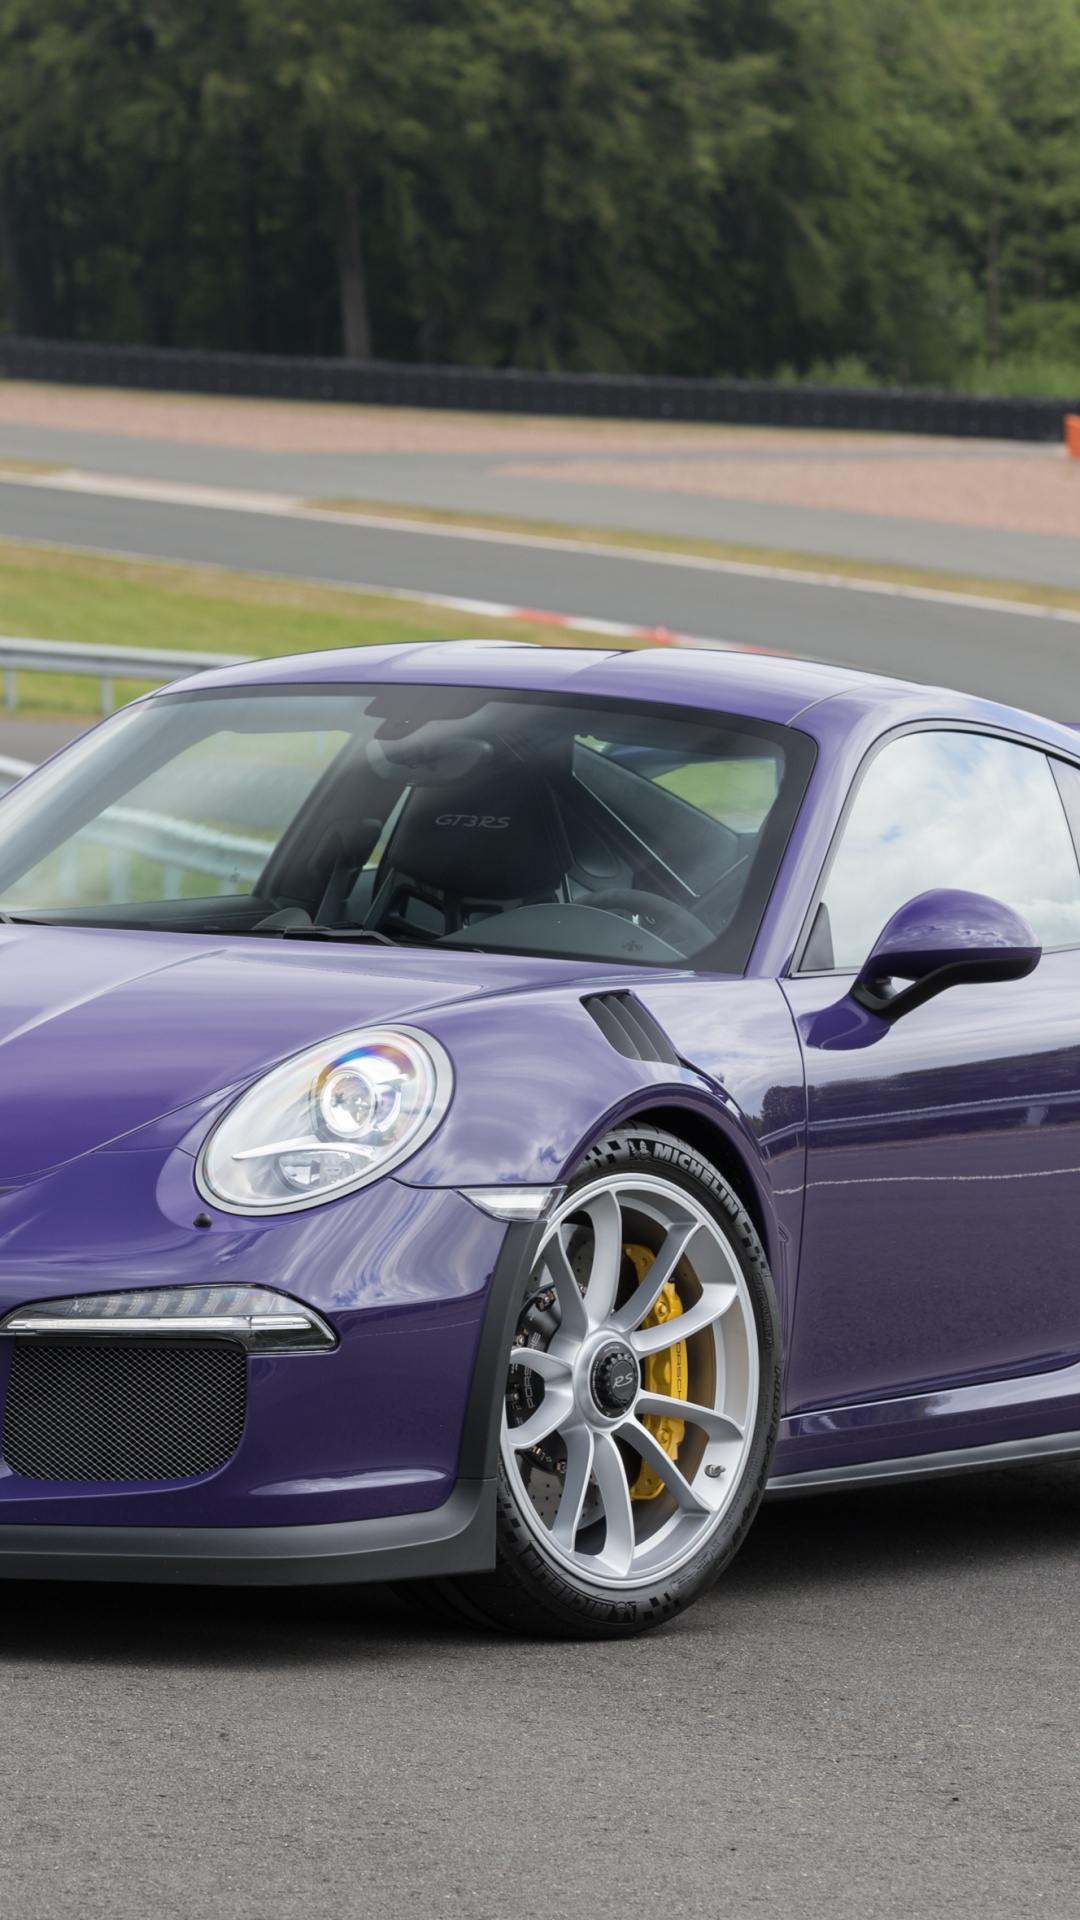 Purple Porsche 911 on Track Field During Daytime. Wallpaper in 1080x1920 Resolution